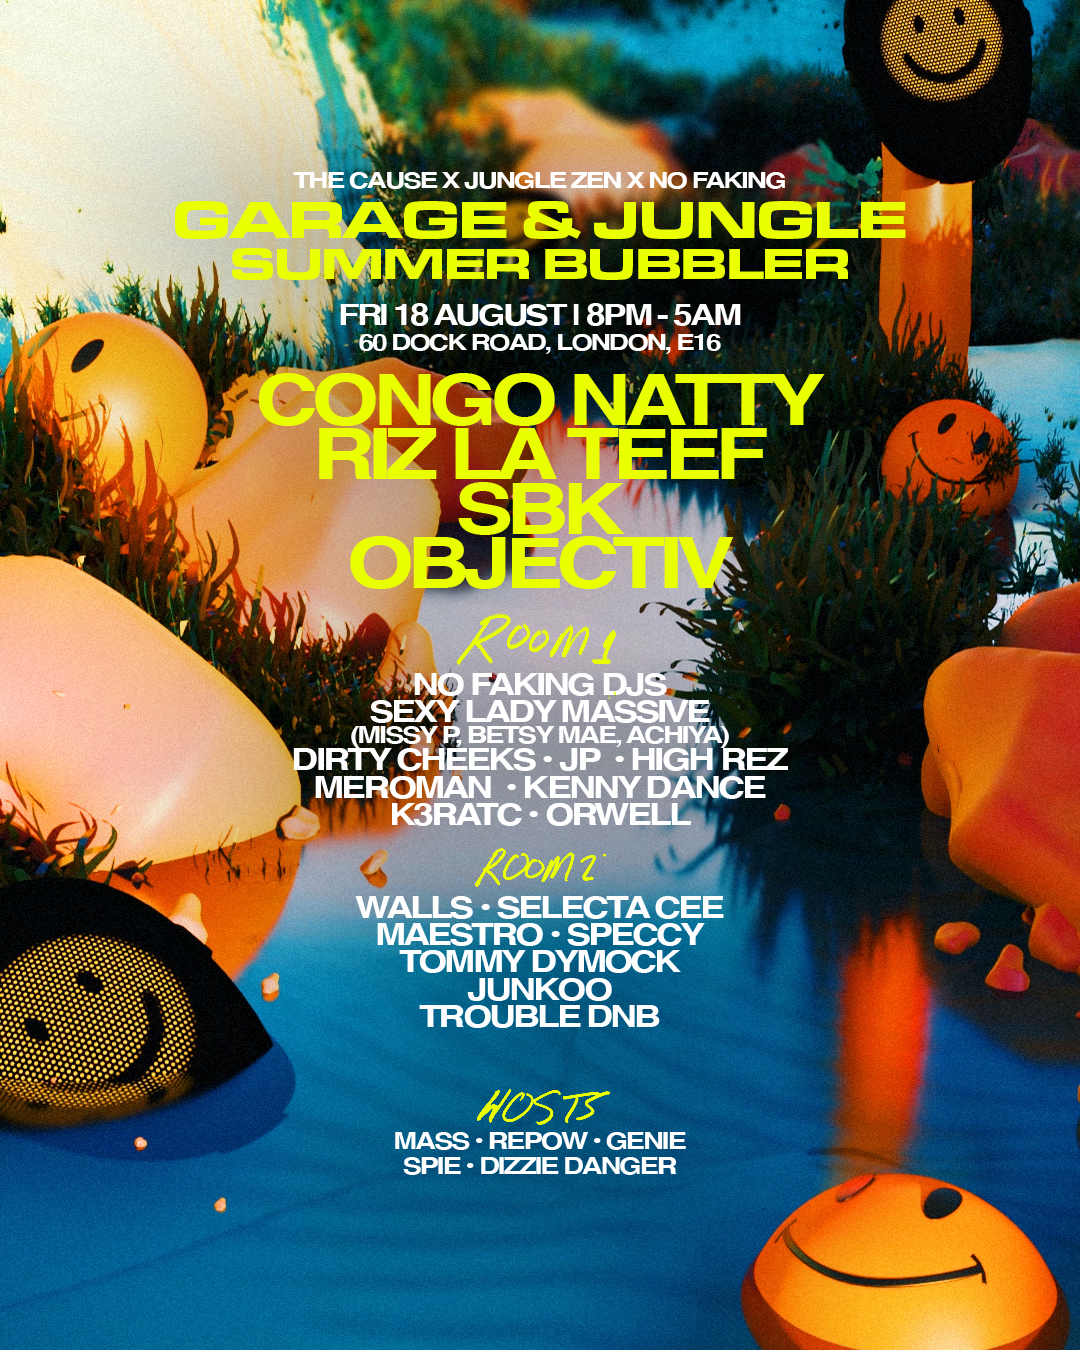 Garage & Jungle Summer Bubbler with Congo Natty, RIZ LA TEEF - フライヤー表